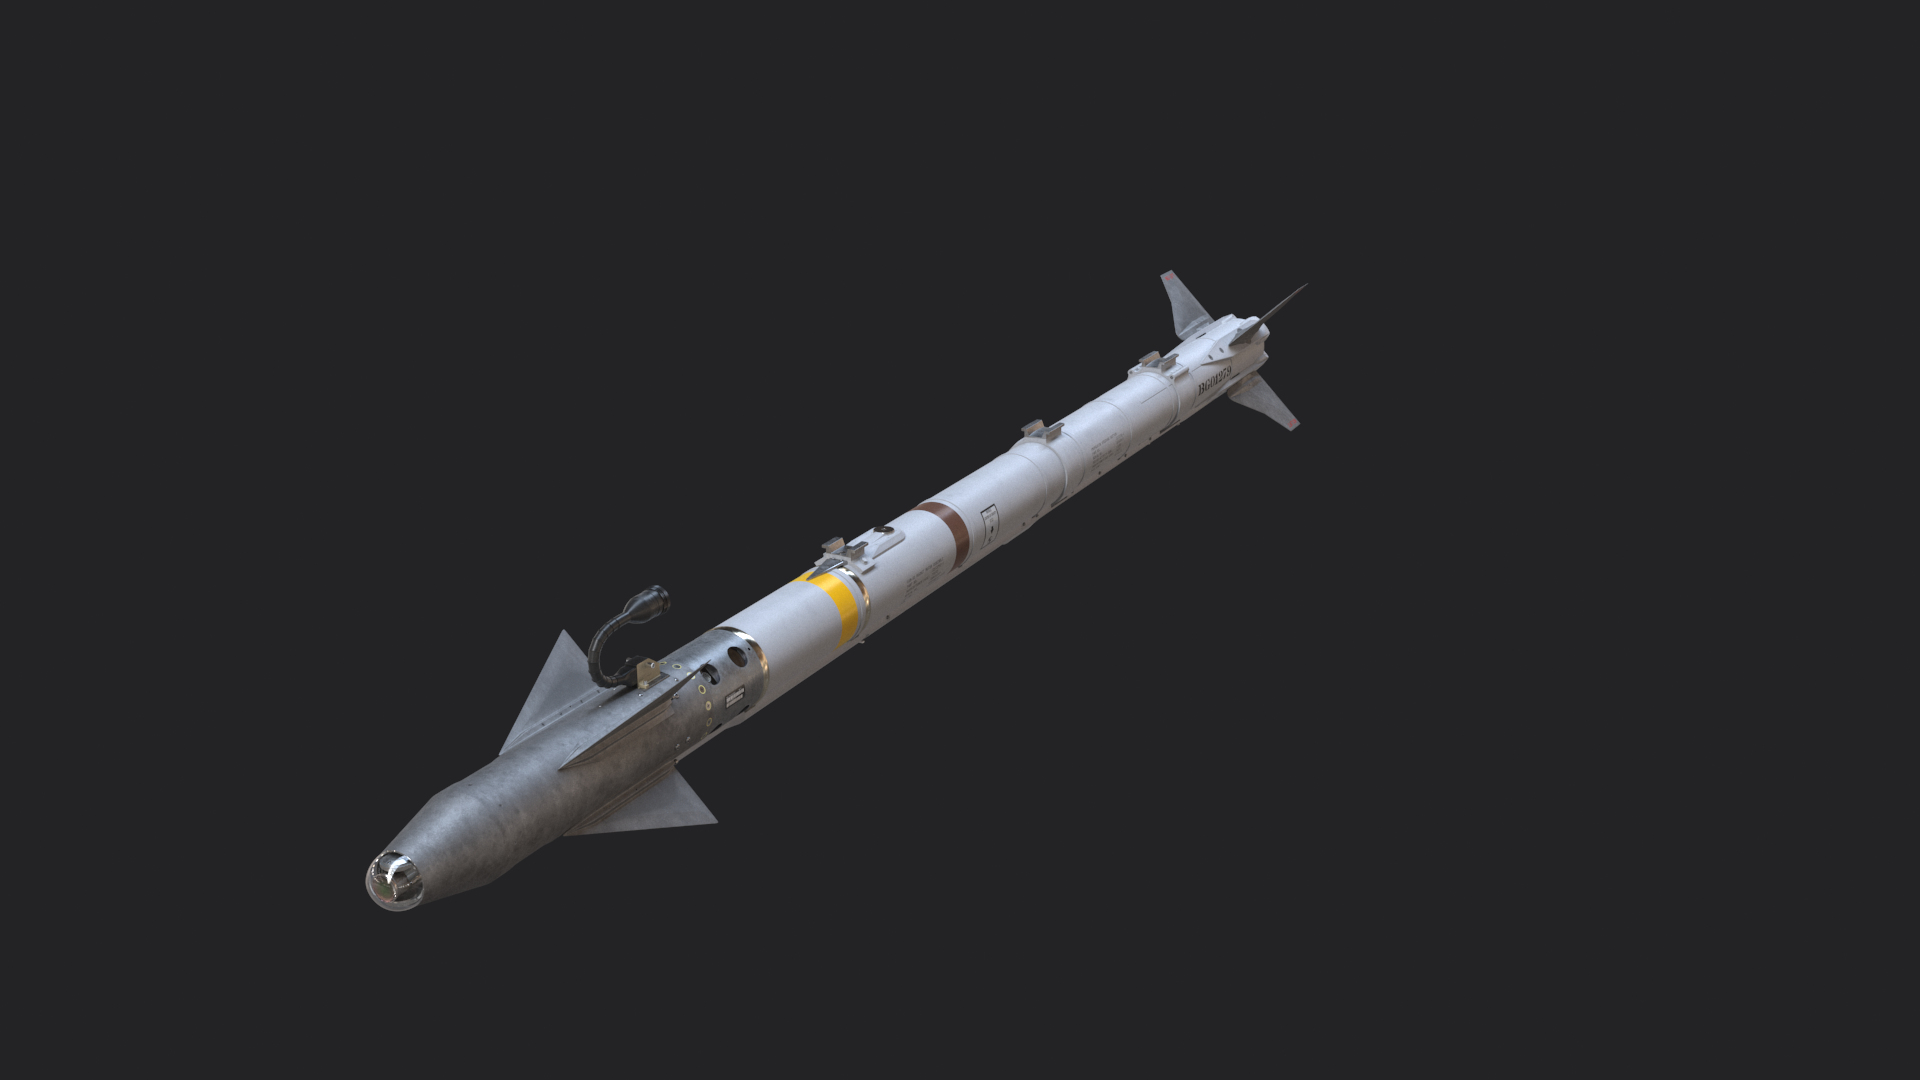 aim-9x sidewinder missile 3d model https://p.turbosquid.com/ts-thumb/29/FbWZyc/sY/aim9xtt/png/1616050614/1920x1080/turn_fit_q99/649c8f82ef74b58c5da087b901d6f62a583a7f58/aim9xtt-1.jpg